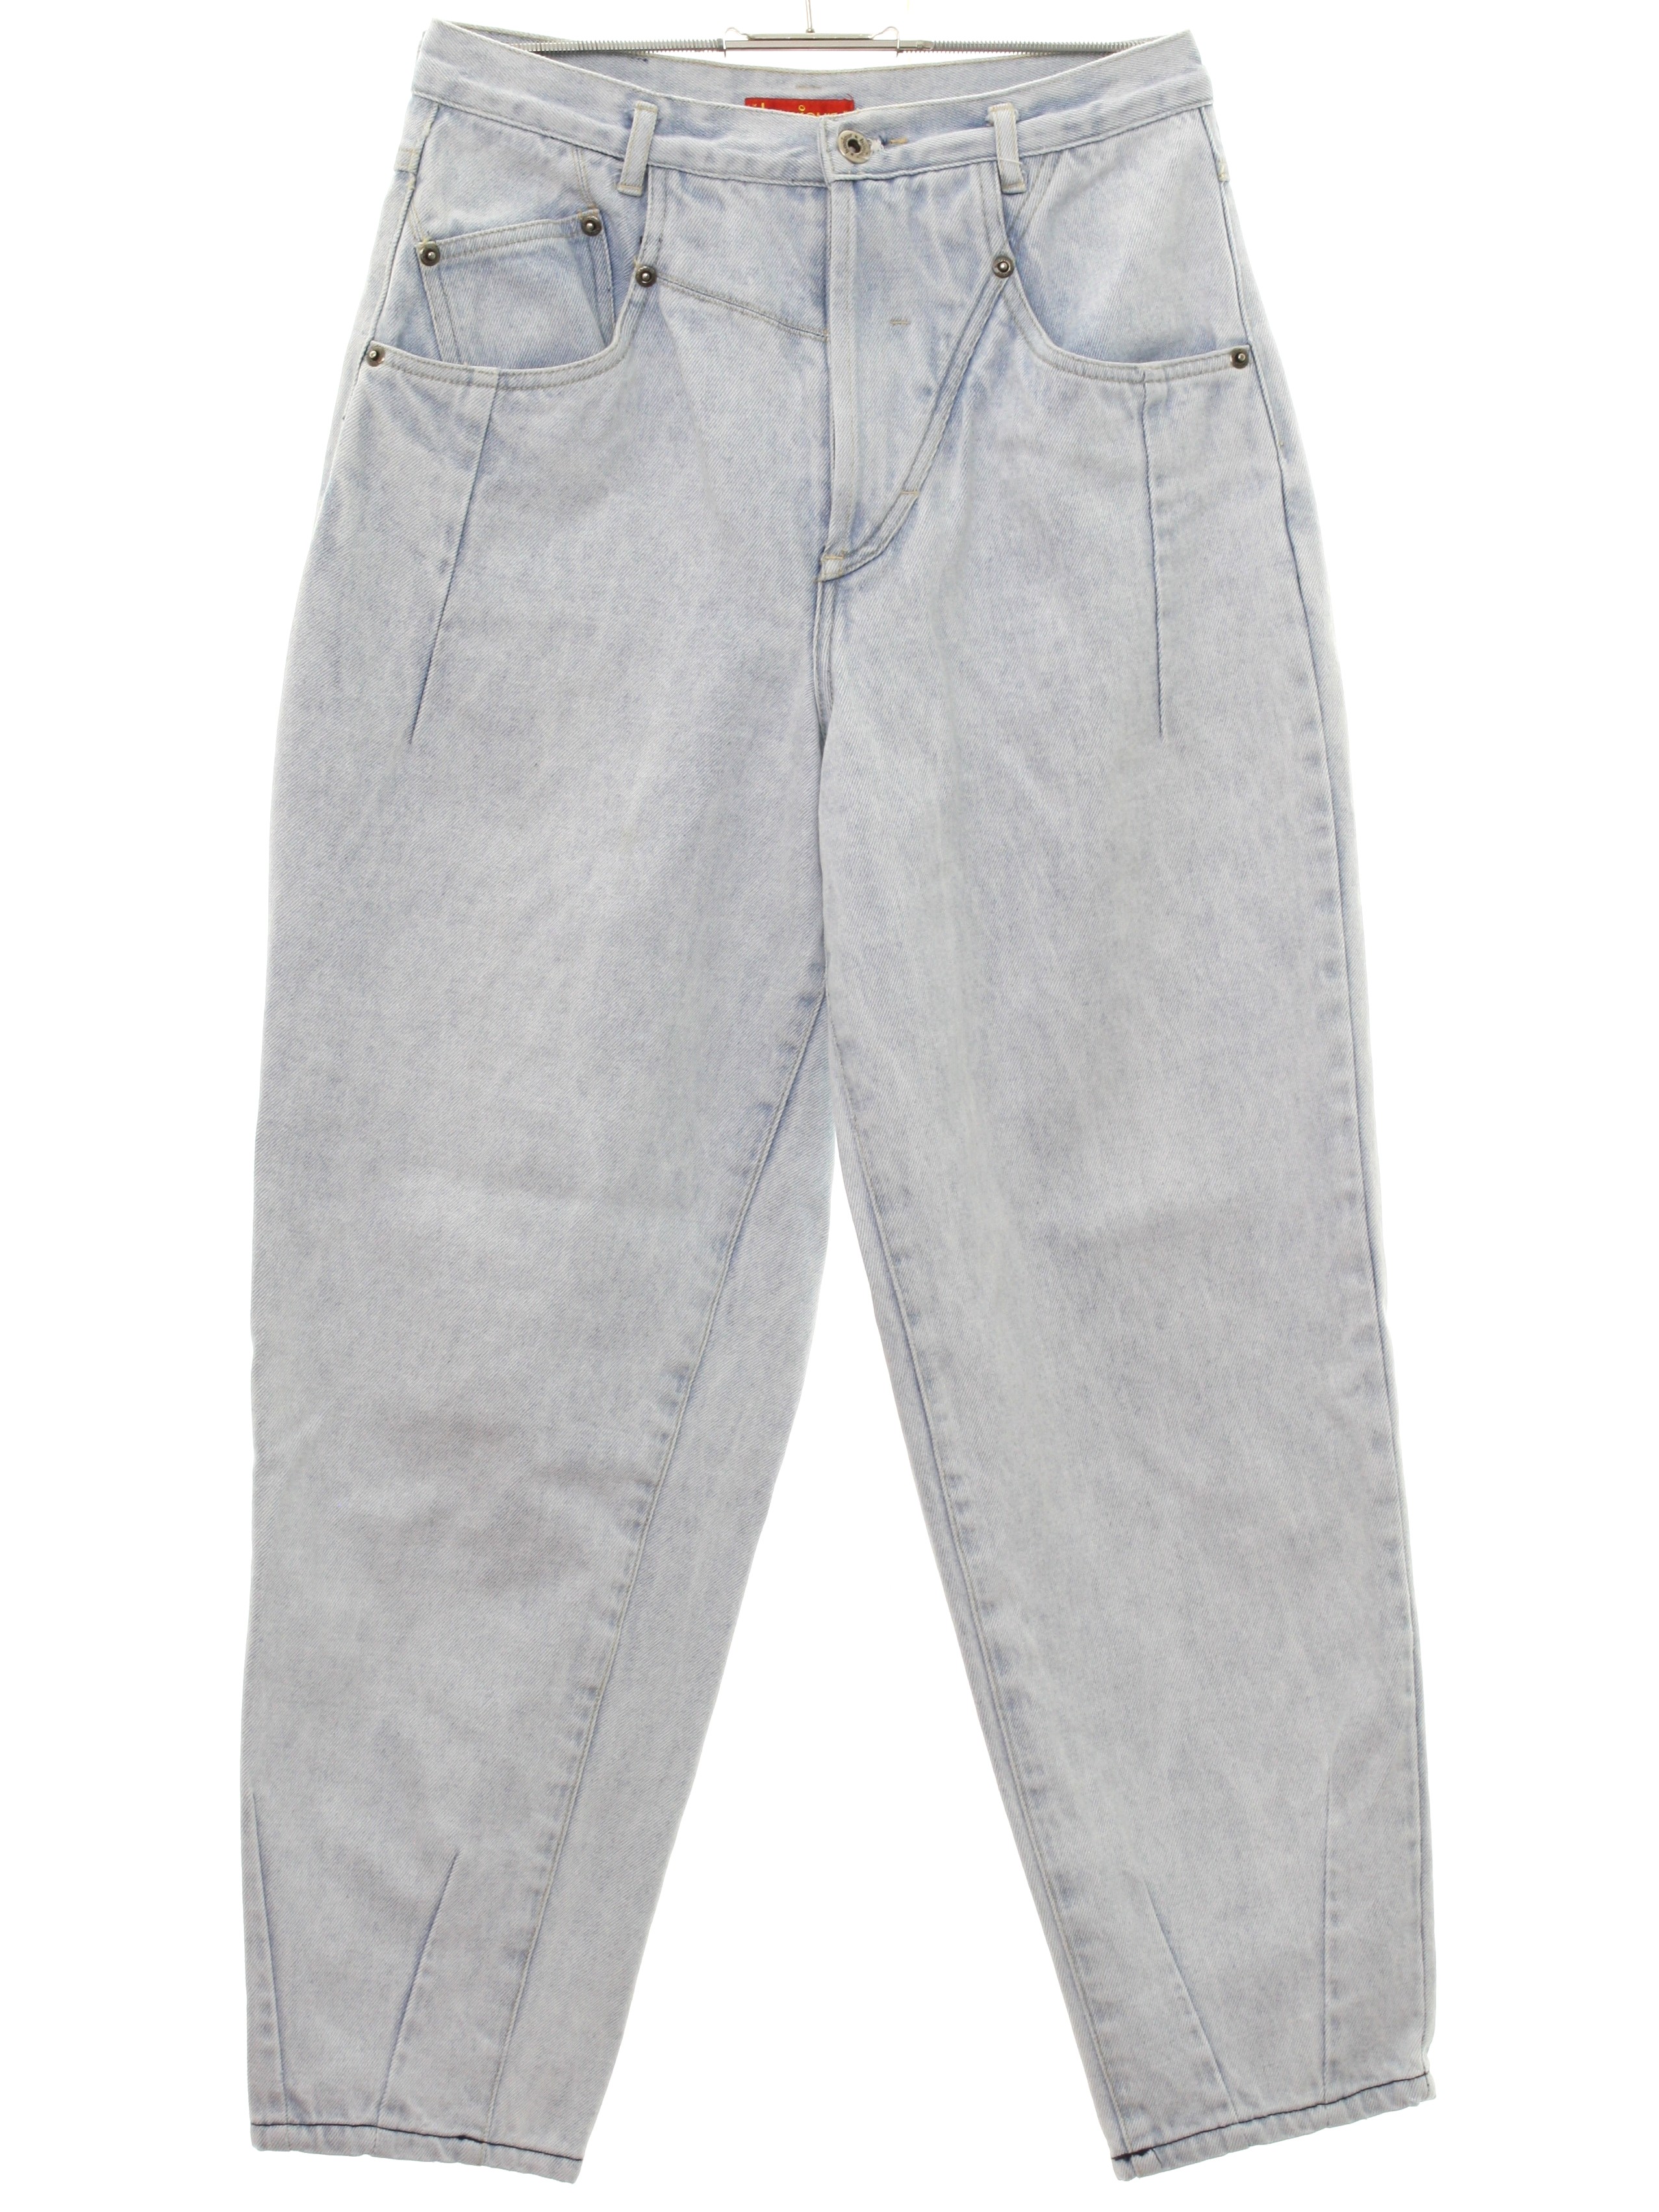 Vintage 1980's Pants: Late 80s -Bonjour- Womens light blue cotton denim ...